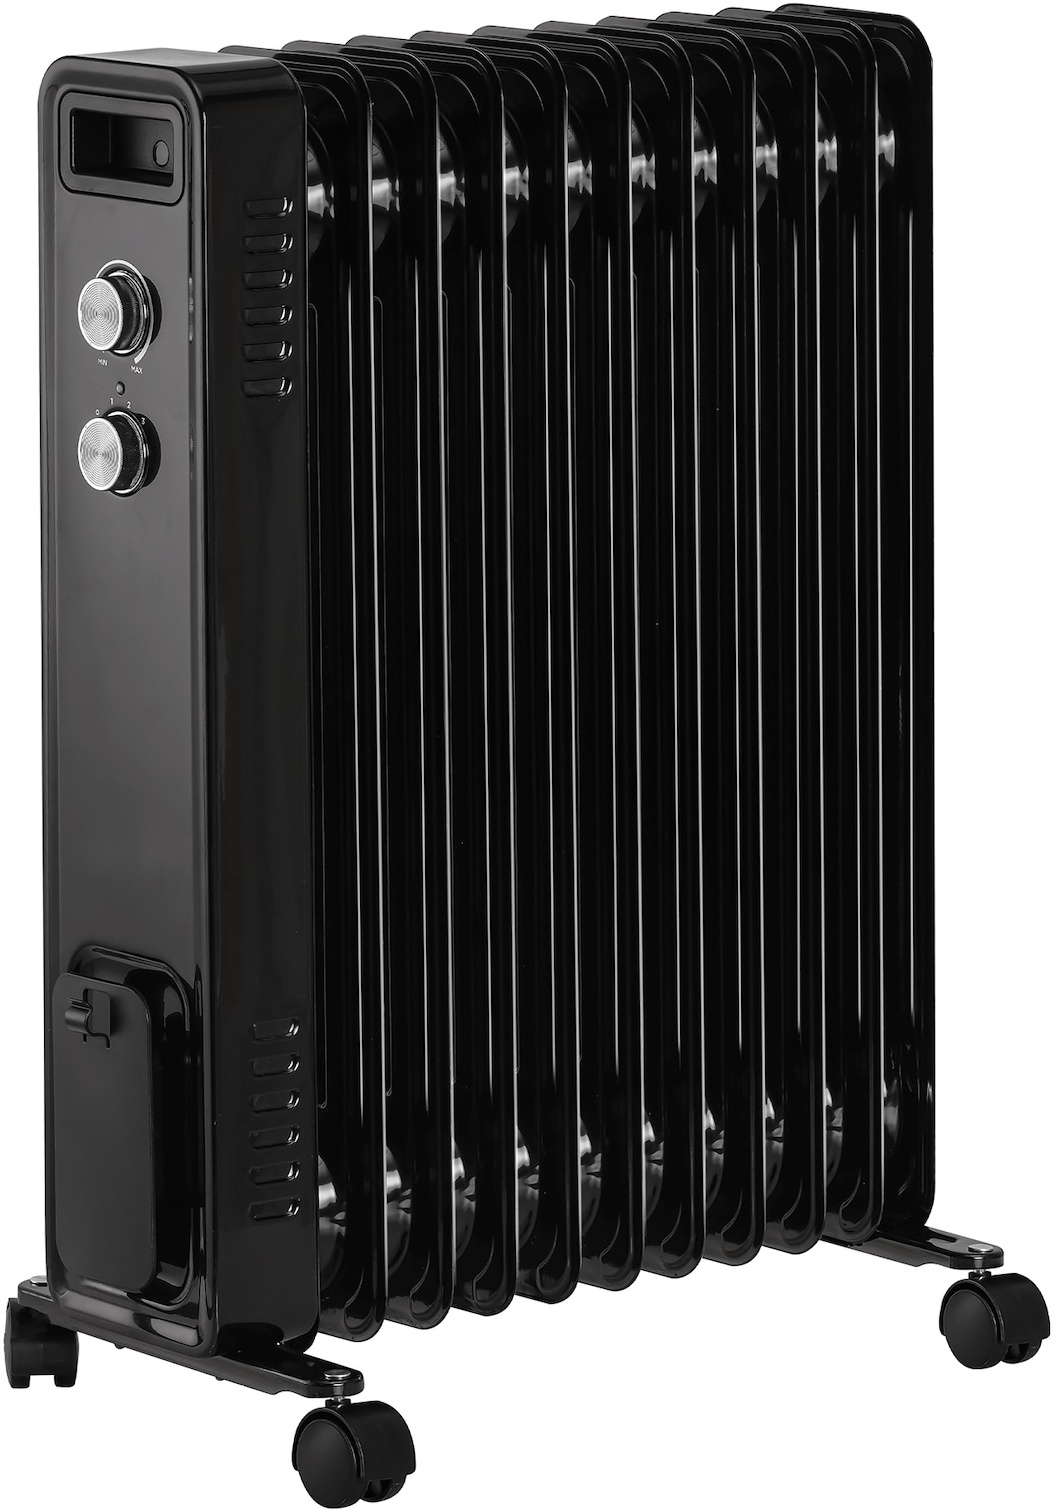 STAHLMANN Ölradiator ZR201 schwarz  Elektroheizung Energiesparend bis 50 qm Fläche  Heizung Elektrisch mit Thermostat und 3 Heizstufen  Elektrisches Heizgerät, Electric Heater, Watt:2500W